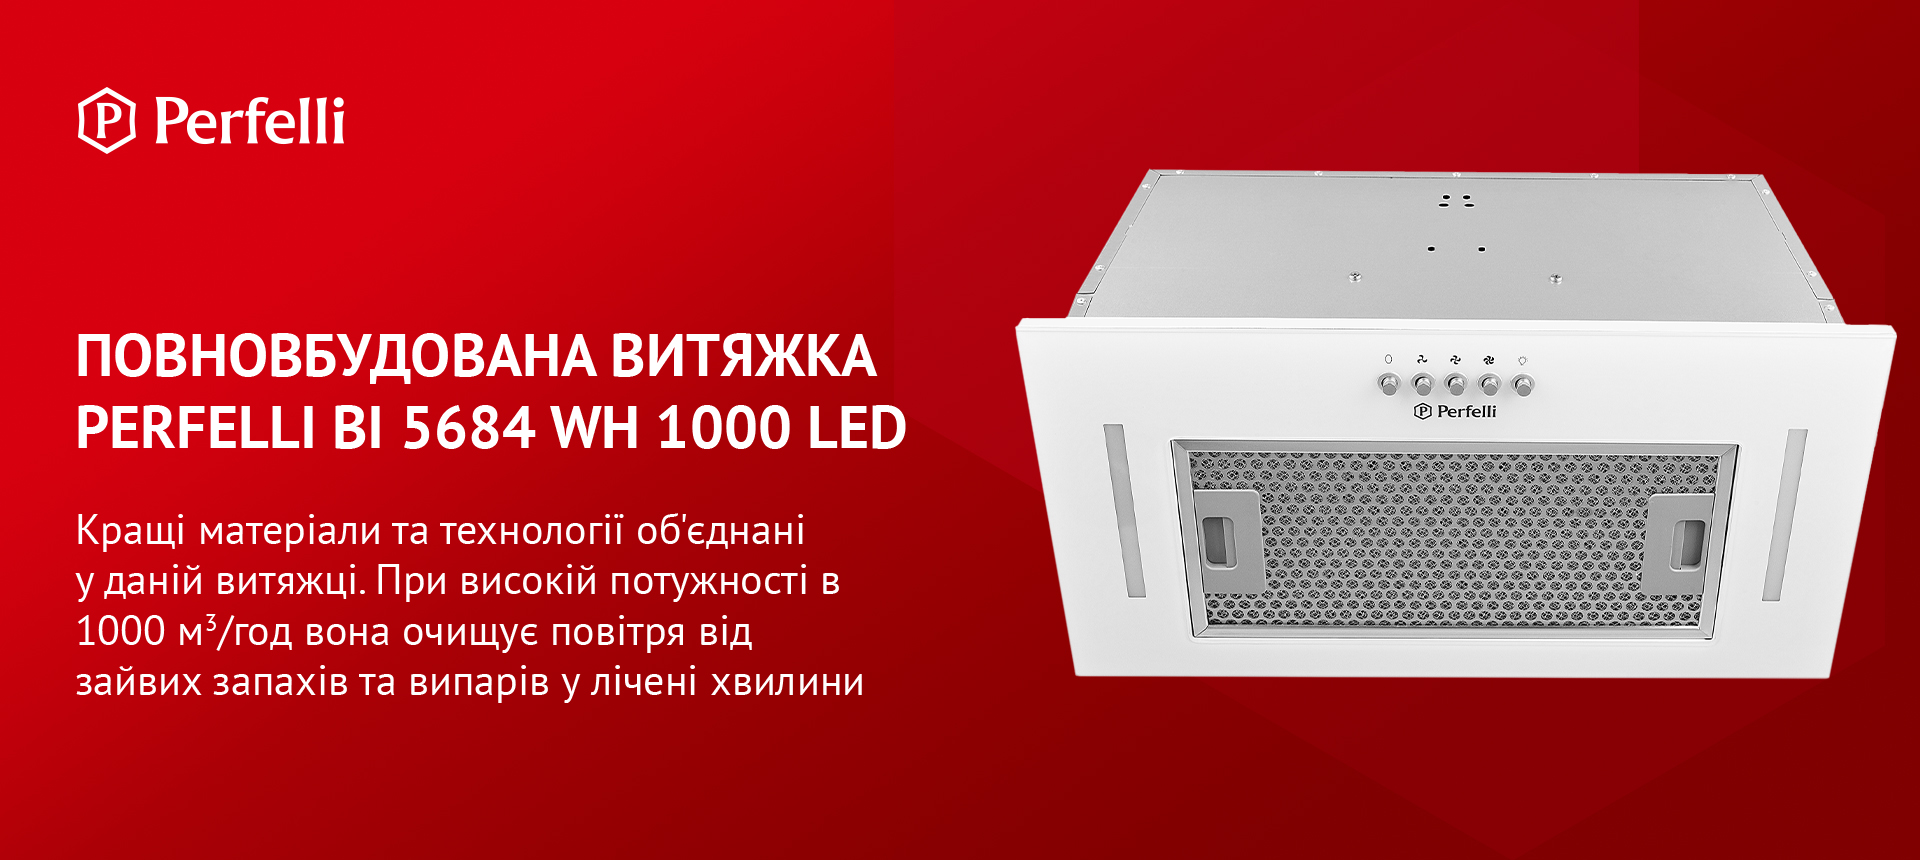 Perfelli BI 5684 WH 1000 LED в магазине в Киеве - фото 10